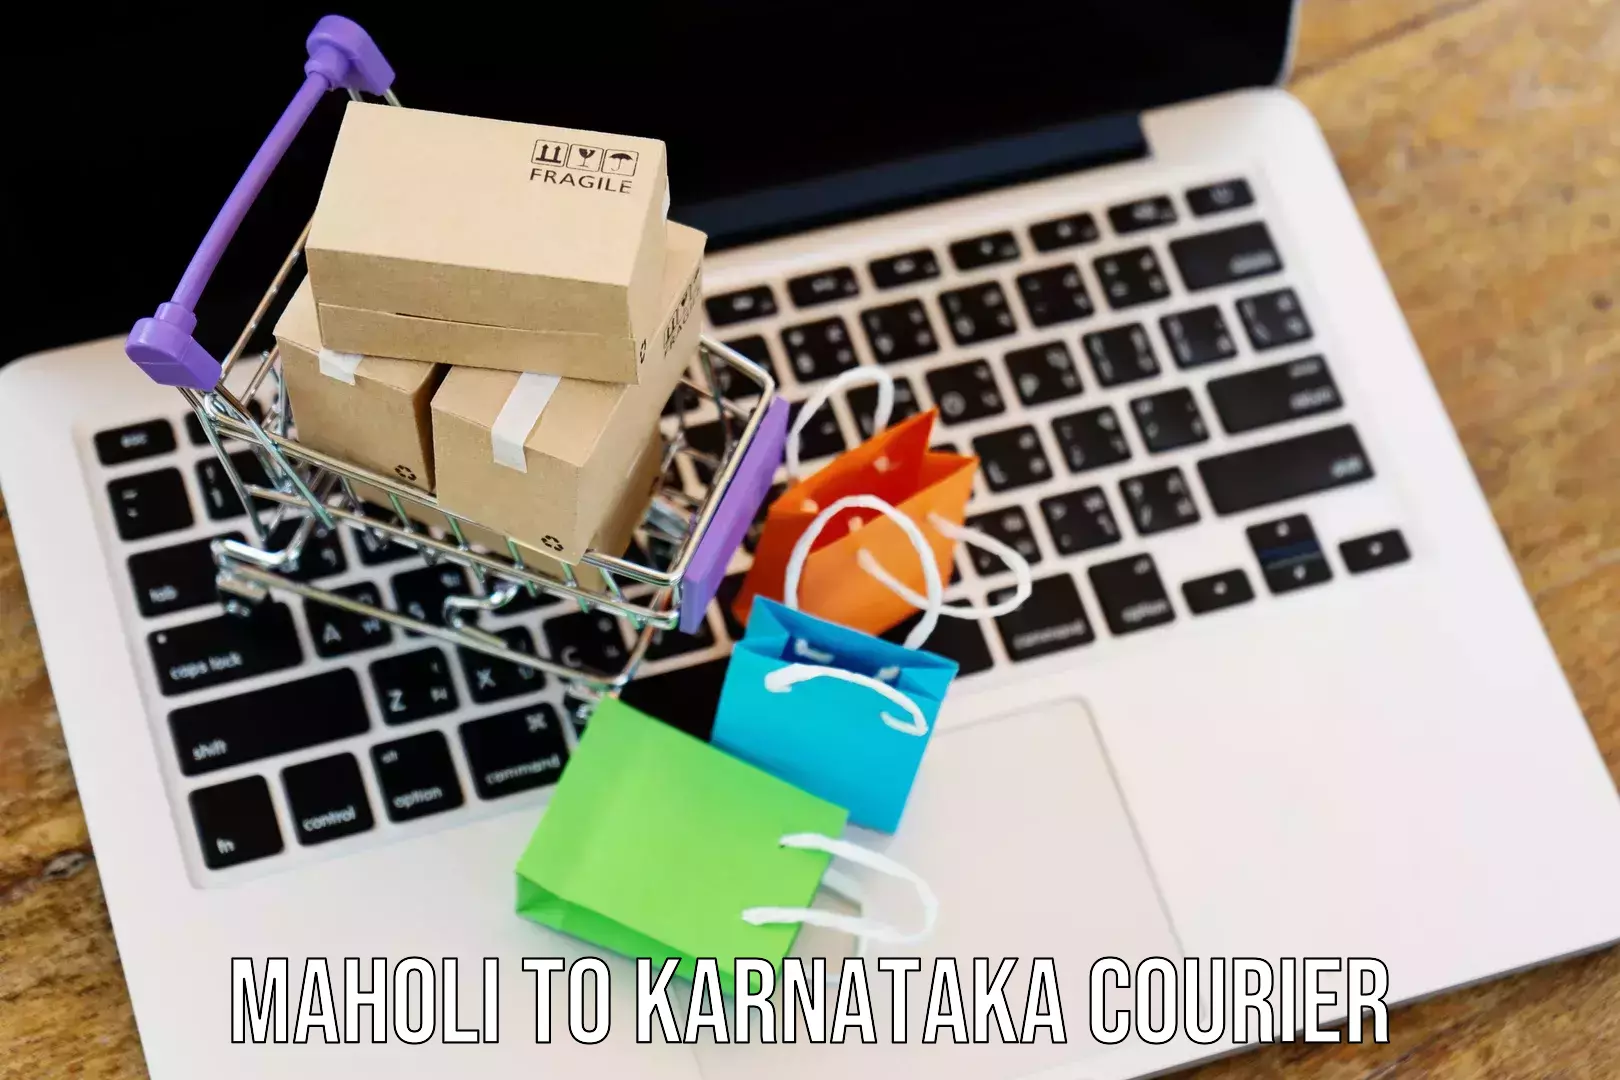 Enhanced shipping experience in Maholi to Karnataka